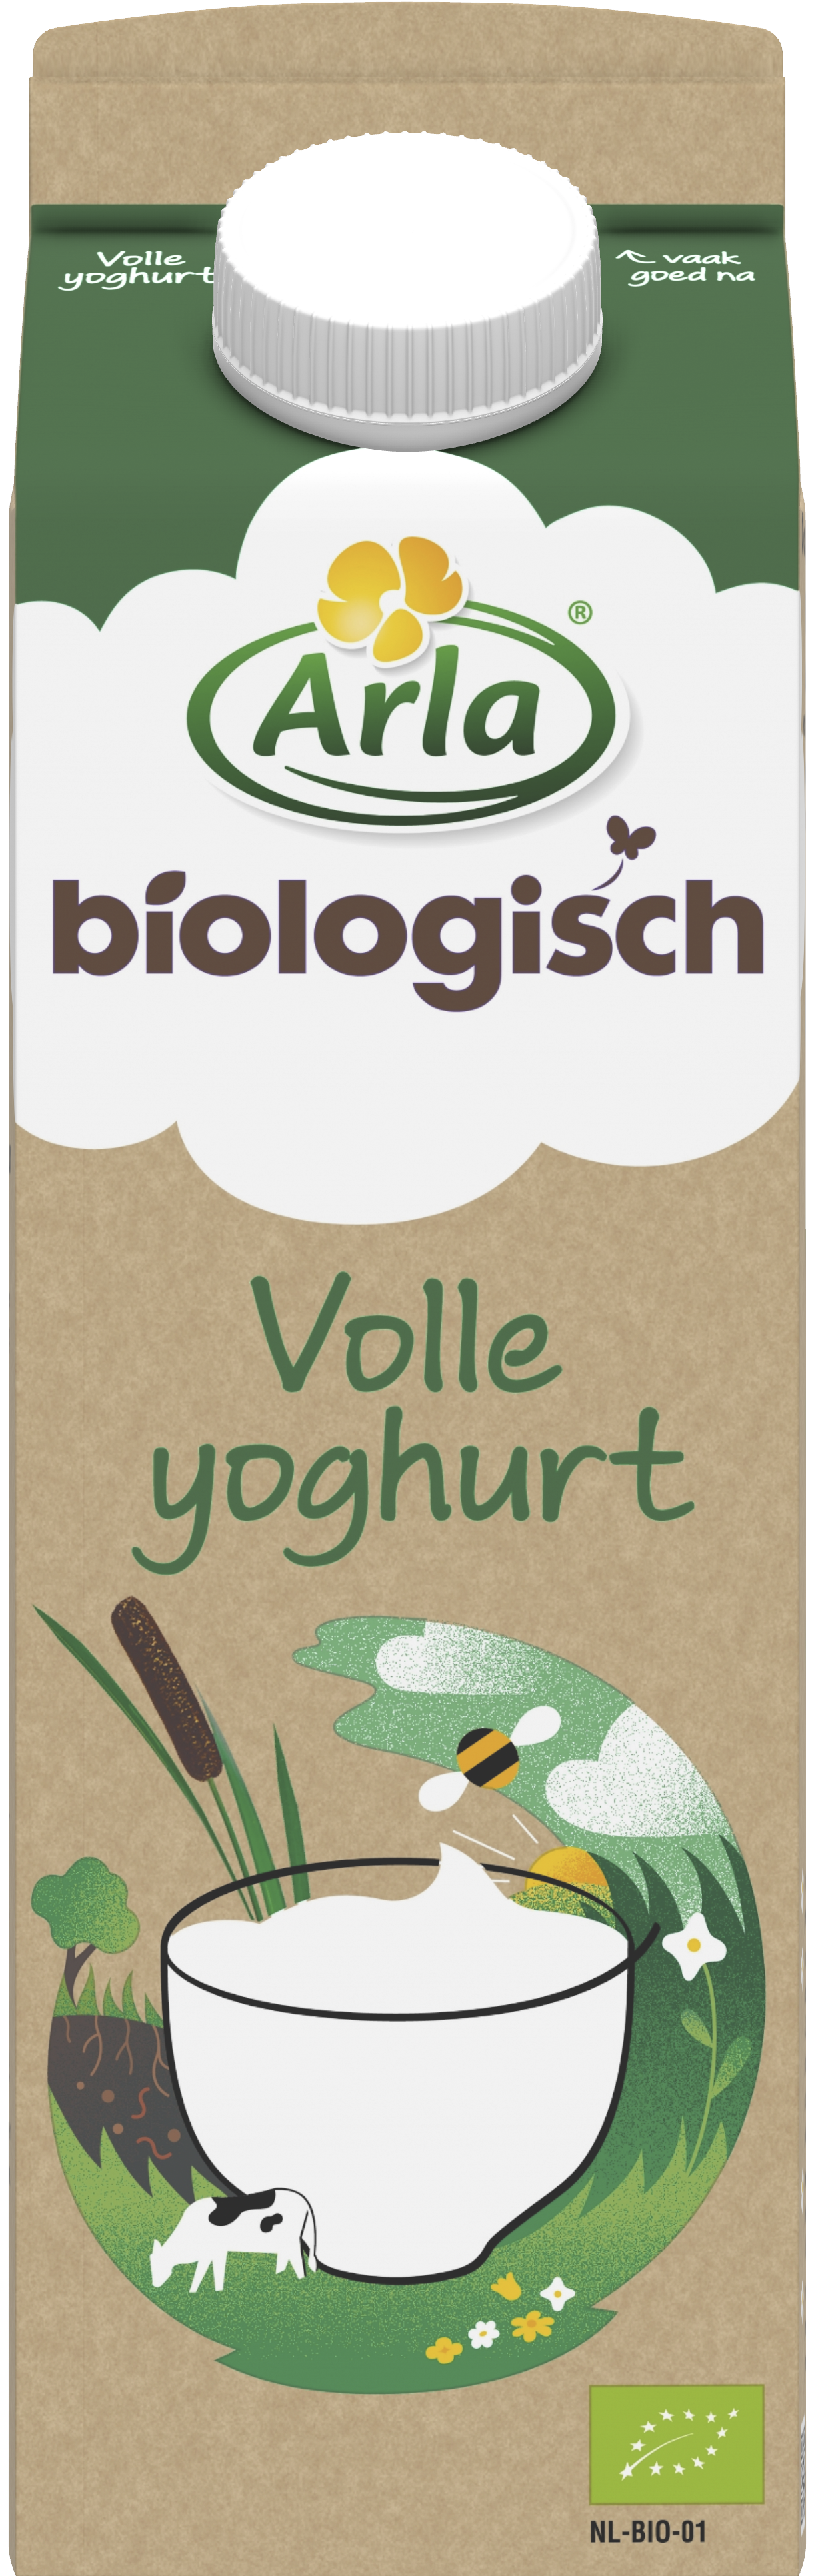 Biologisch Volle yoghurt 1 liter